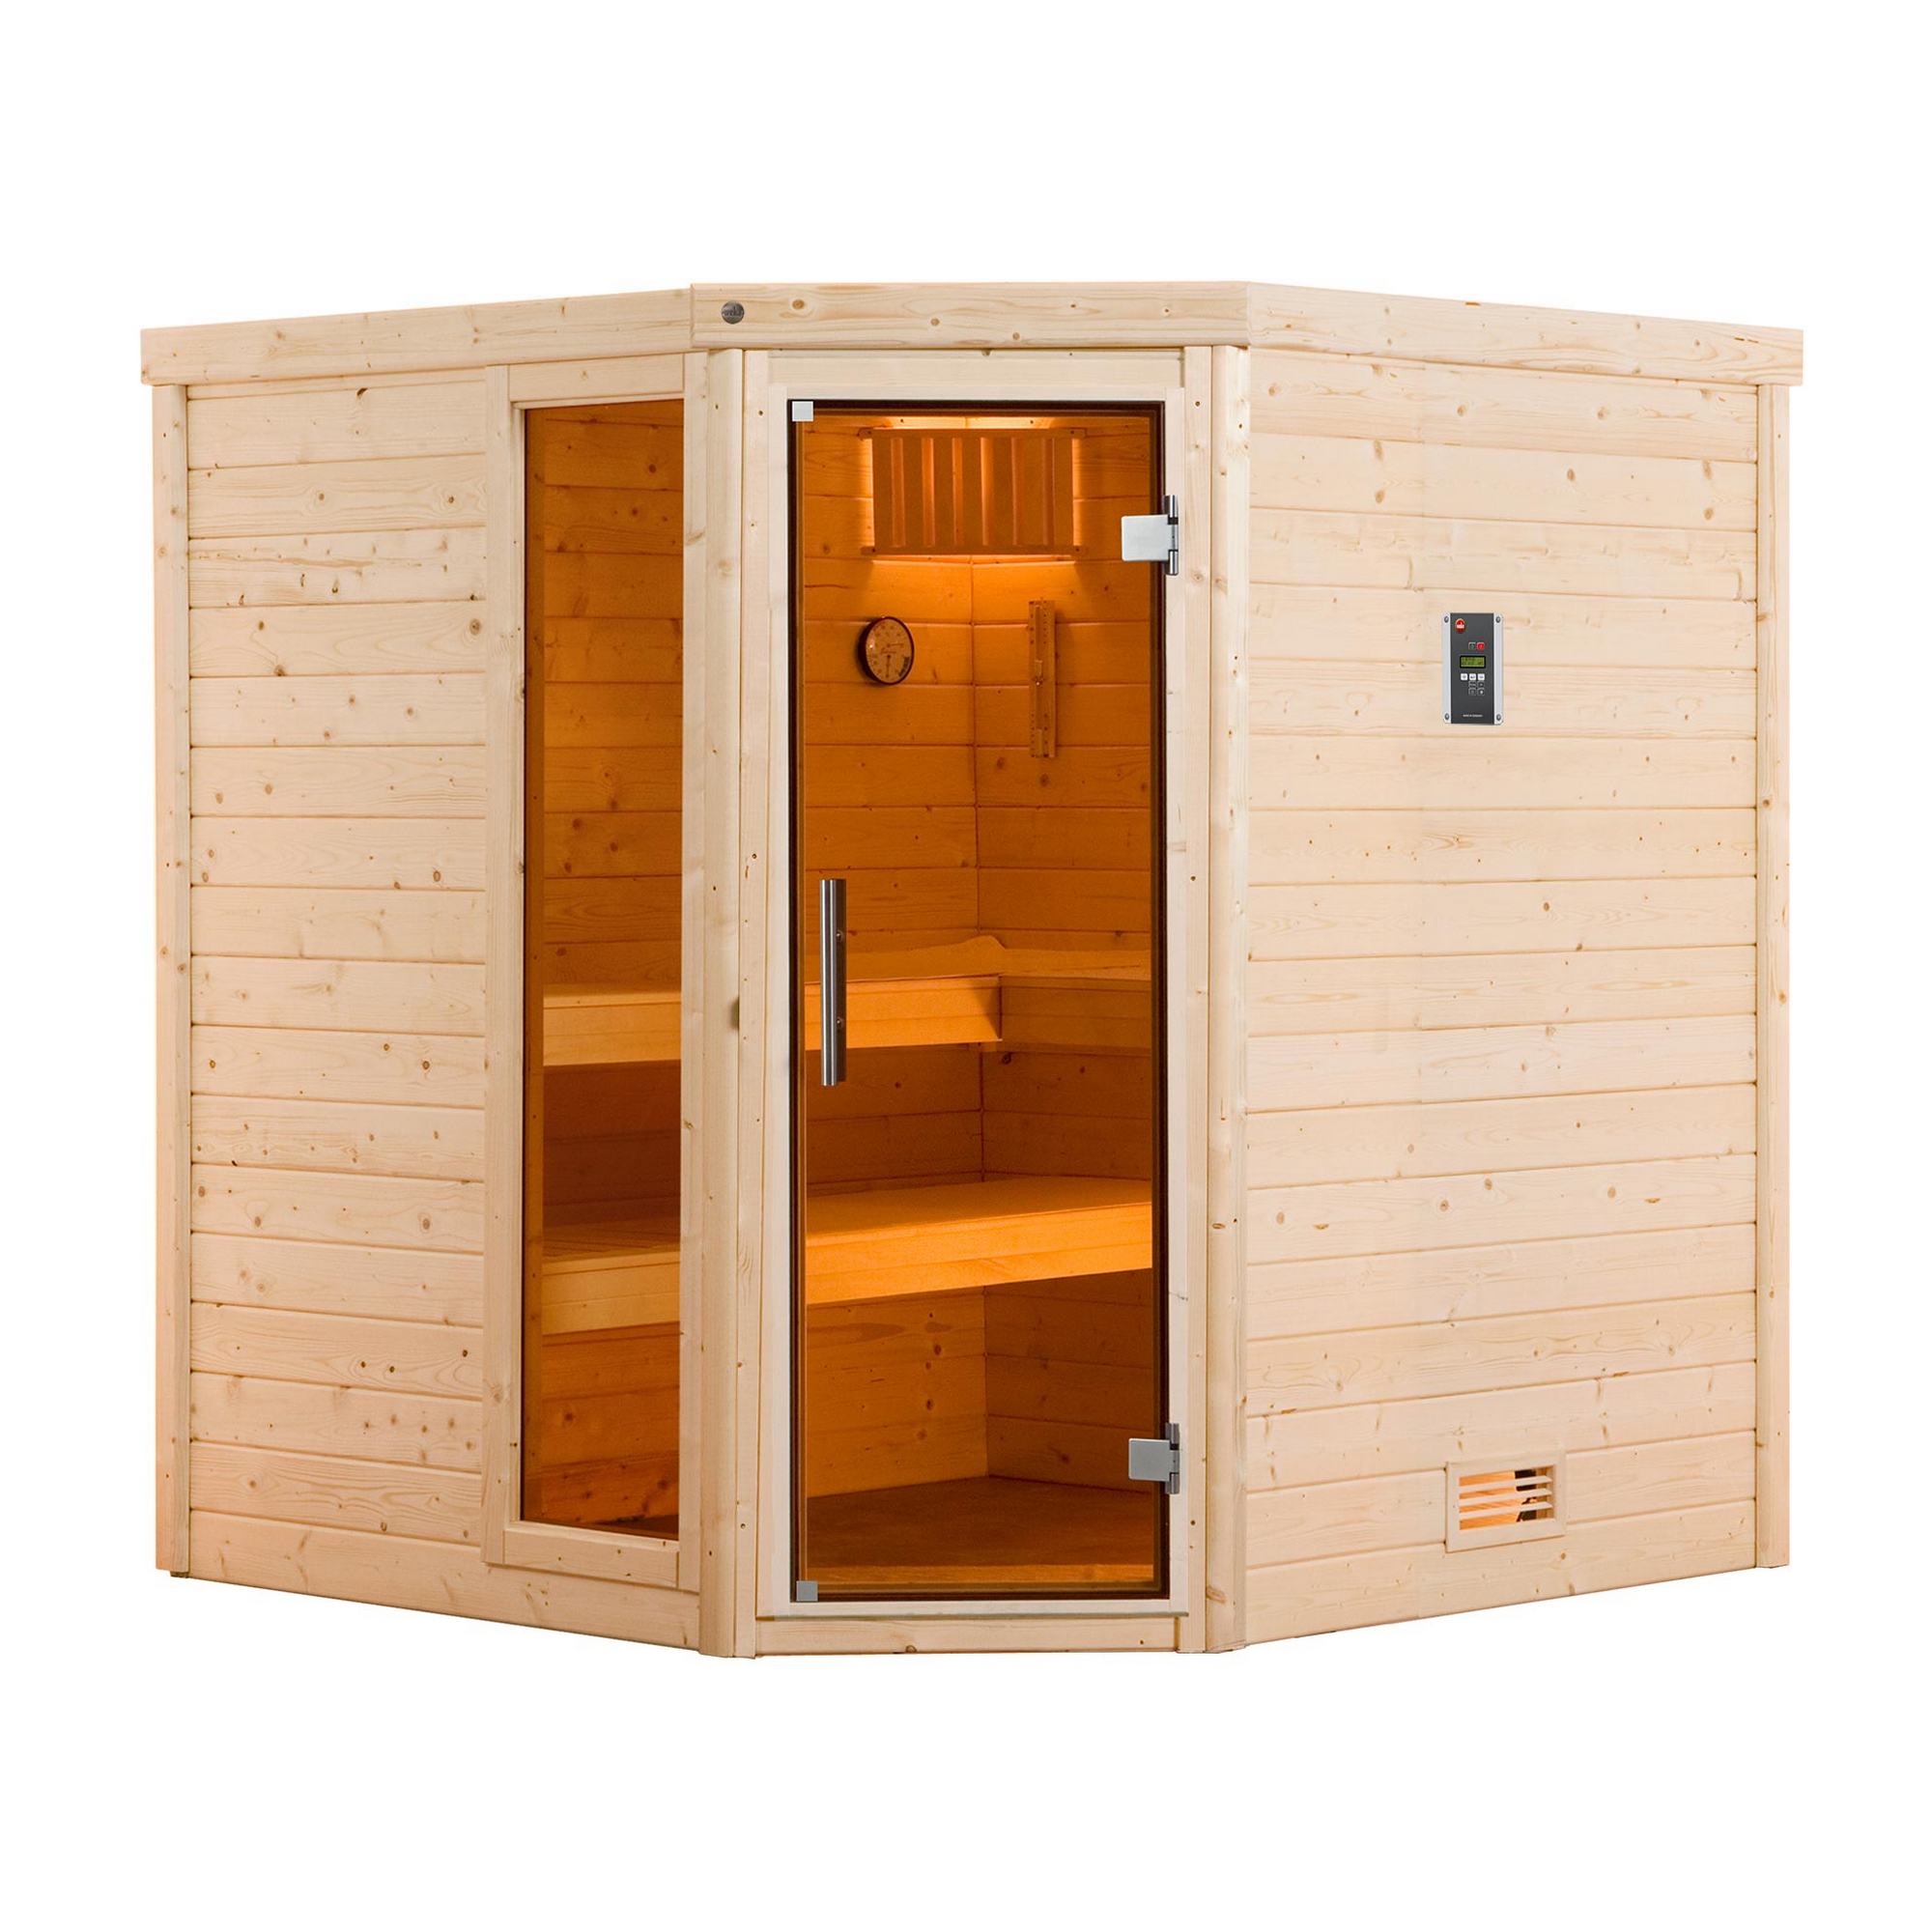 Premium-Massivholz-Sauna 'Turku 2 Eck' mit 7,5 kW OS-Ofenset, Steuerung, Glastür, Fenster 188 x 188 x 205 cm + product picture